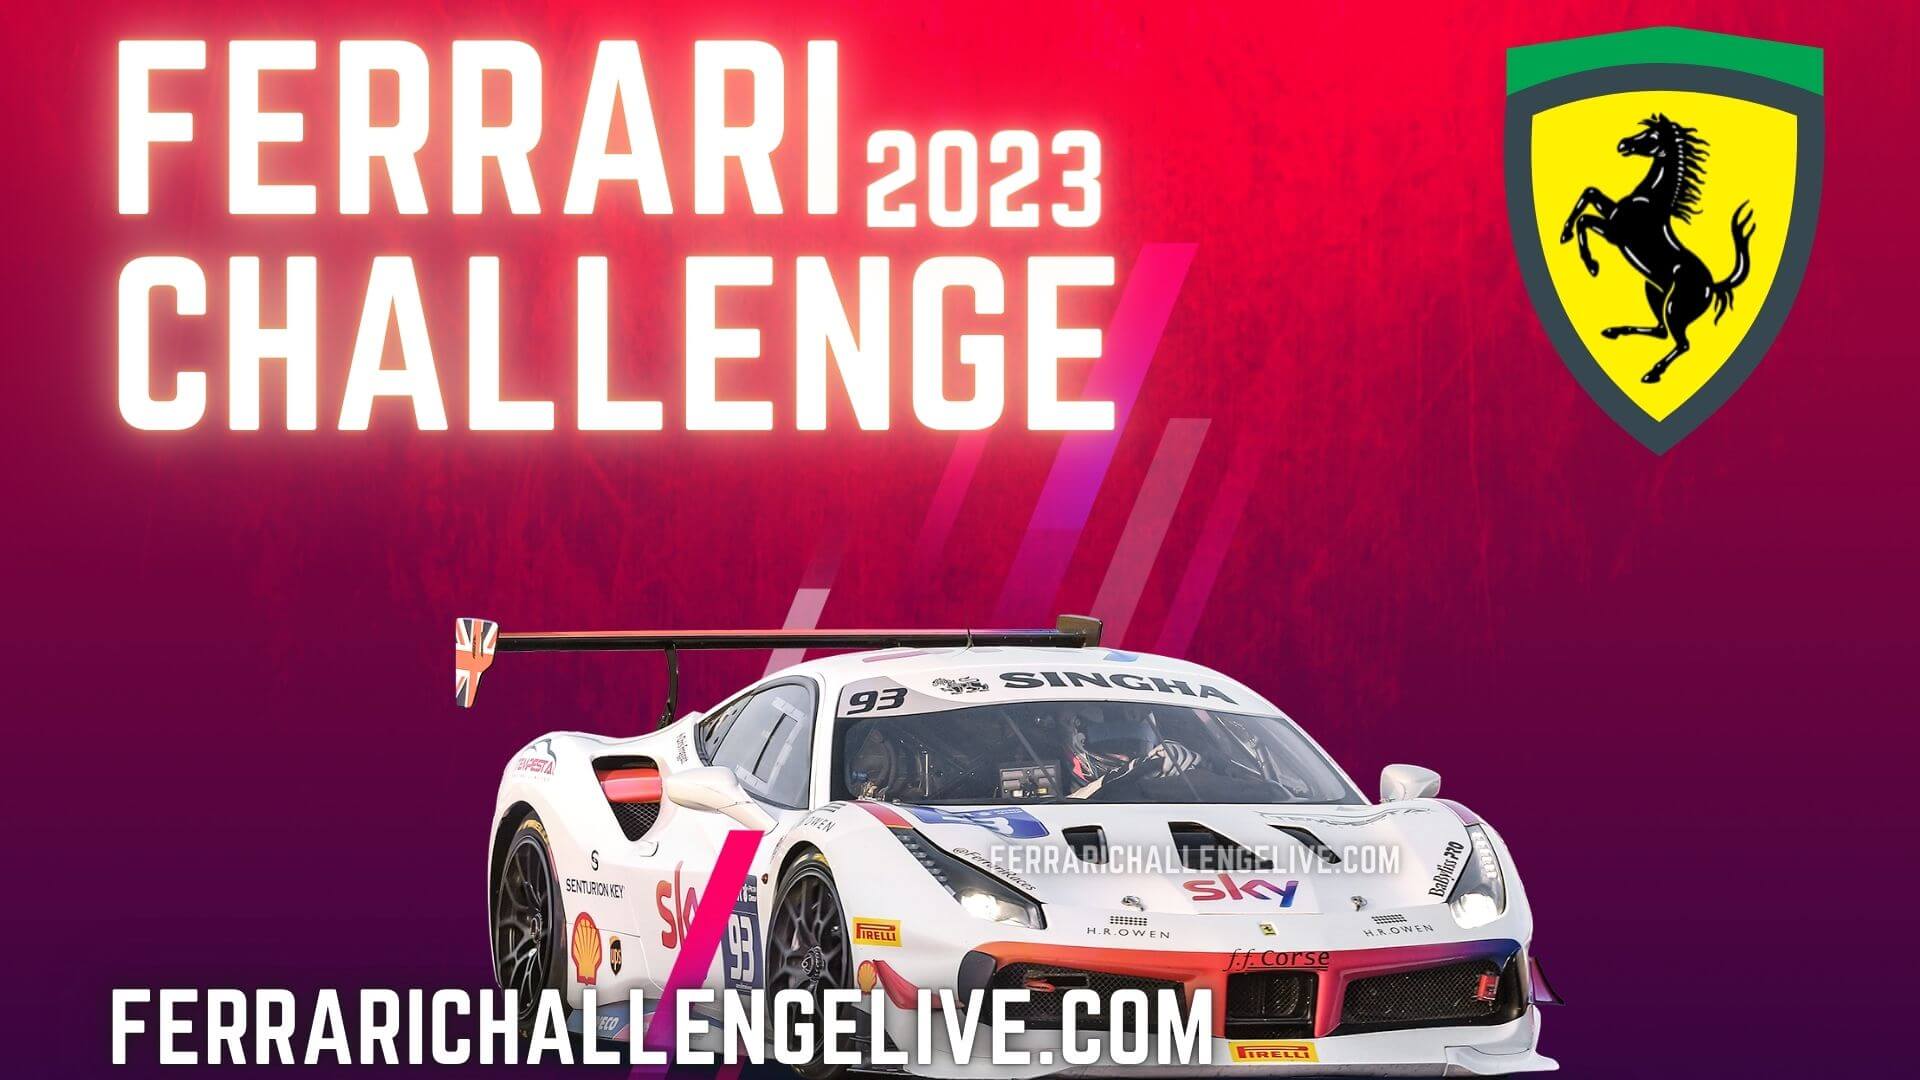 Ferrari Challenge Live Stream